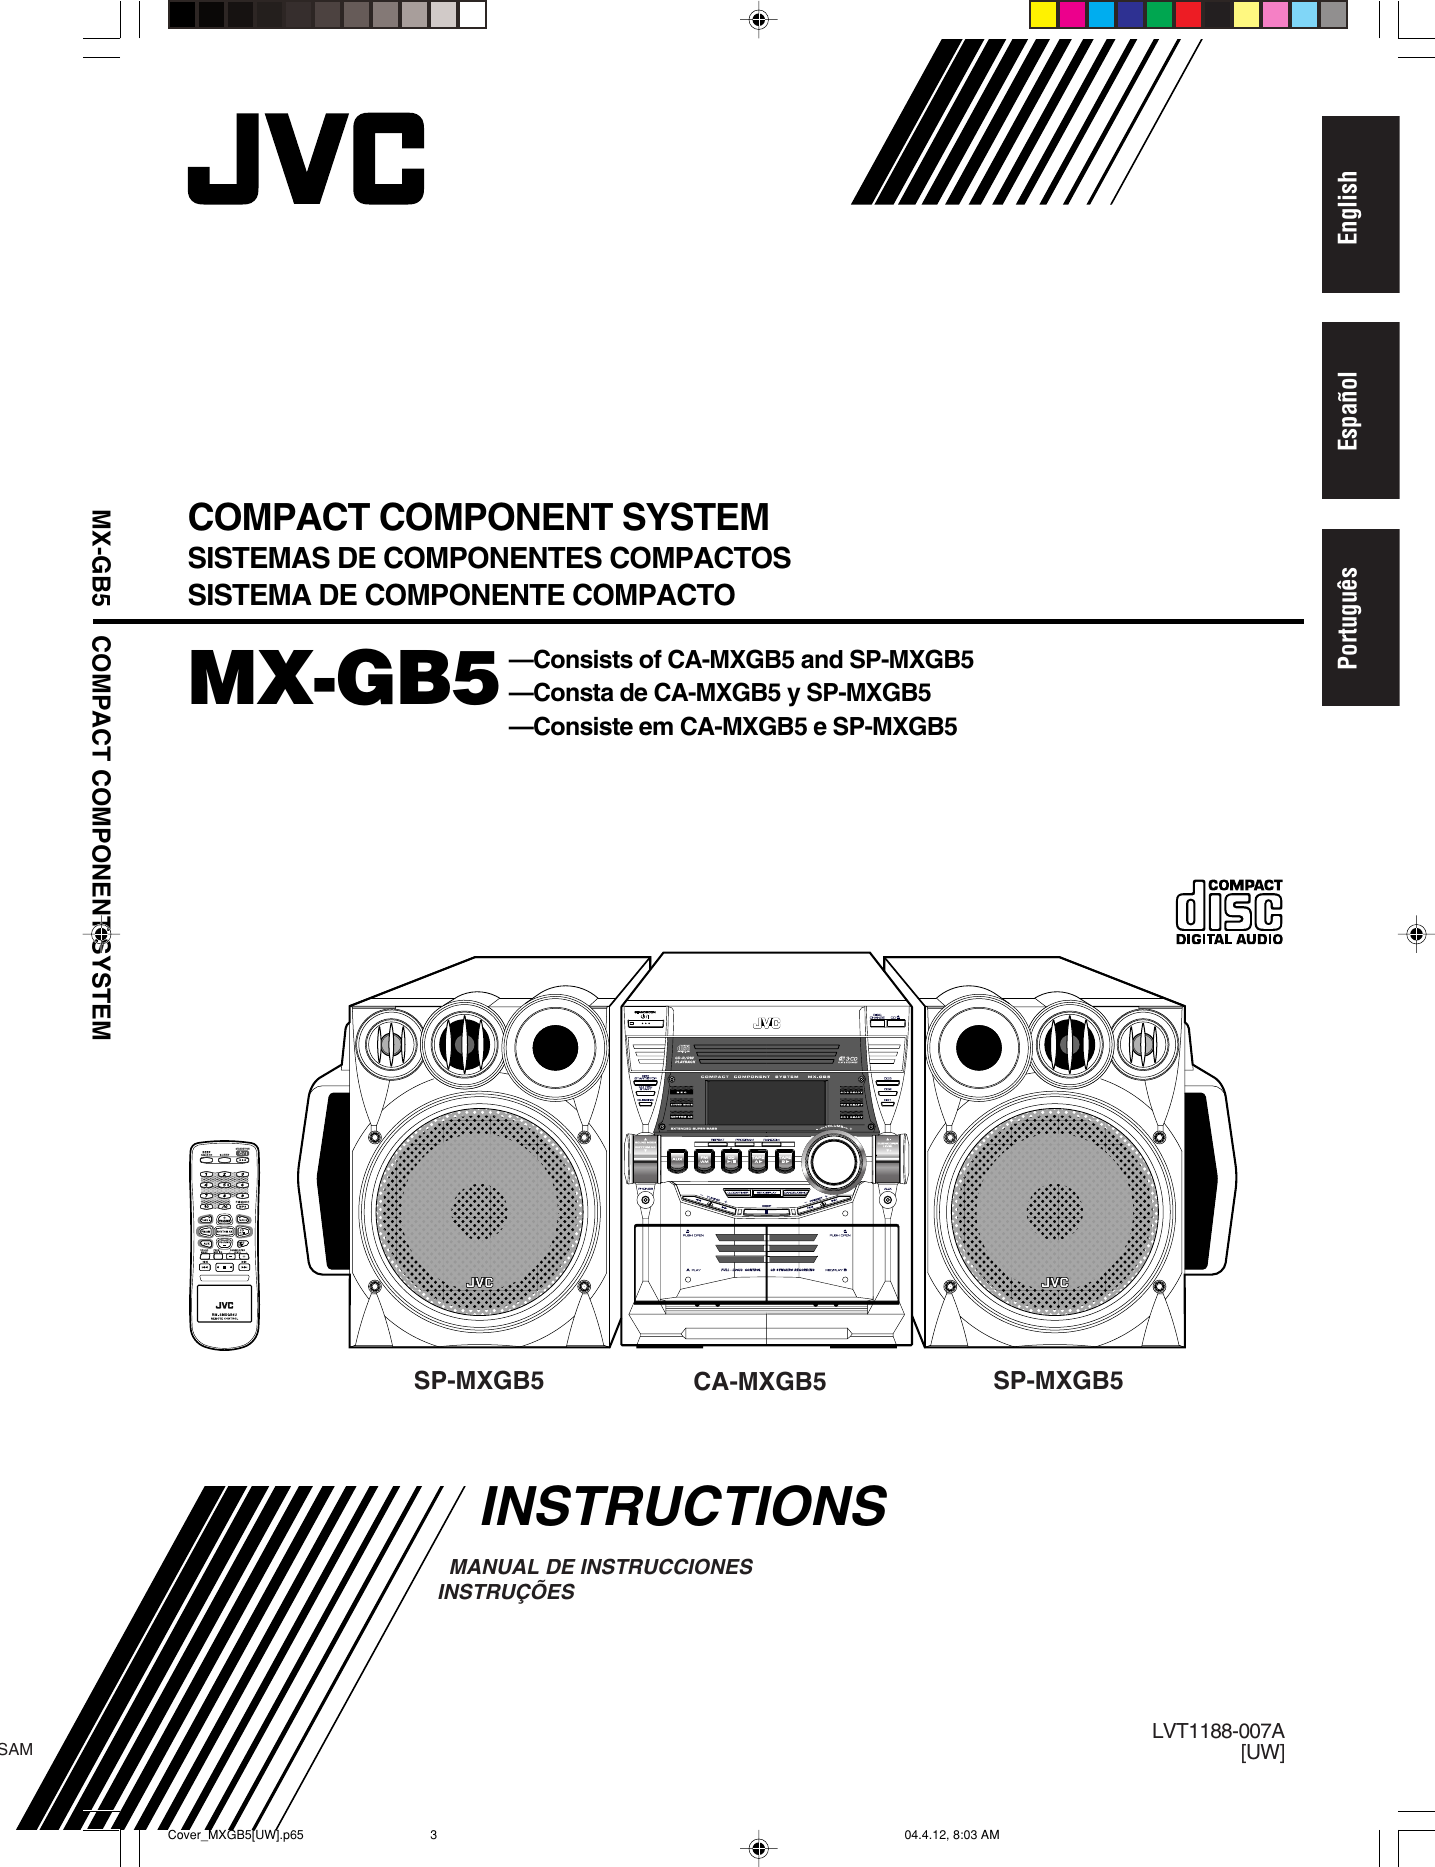 Jvc Mx Gb5 Gb5 Uw User Manual Lvt11 007a